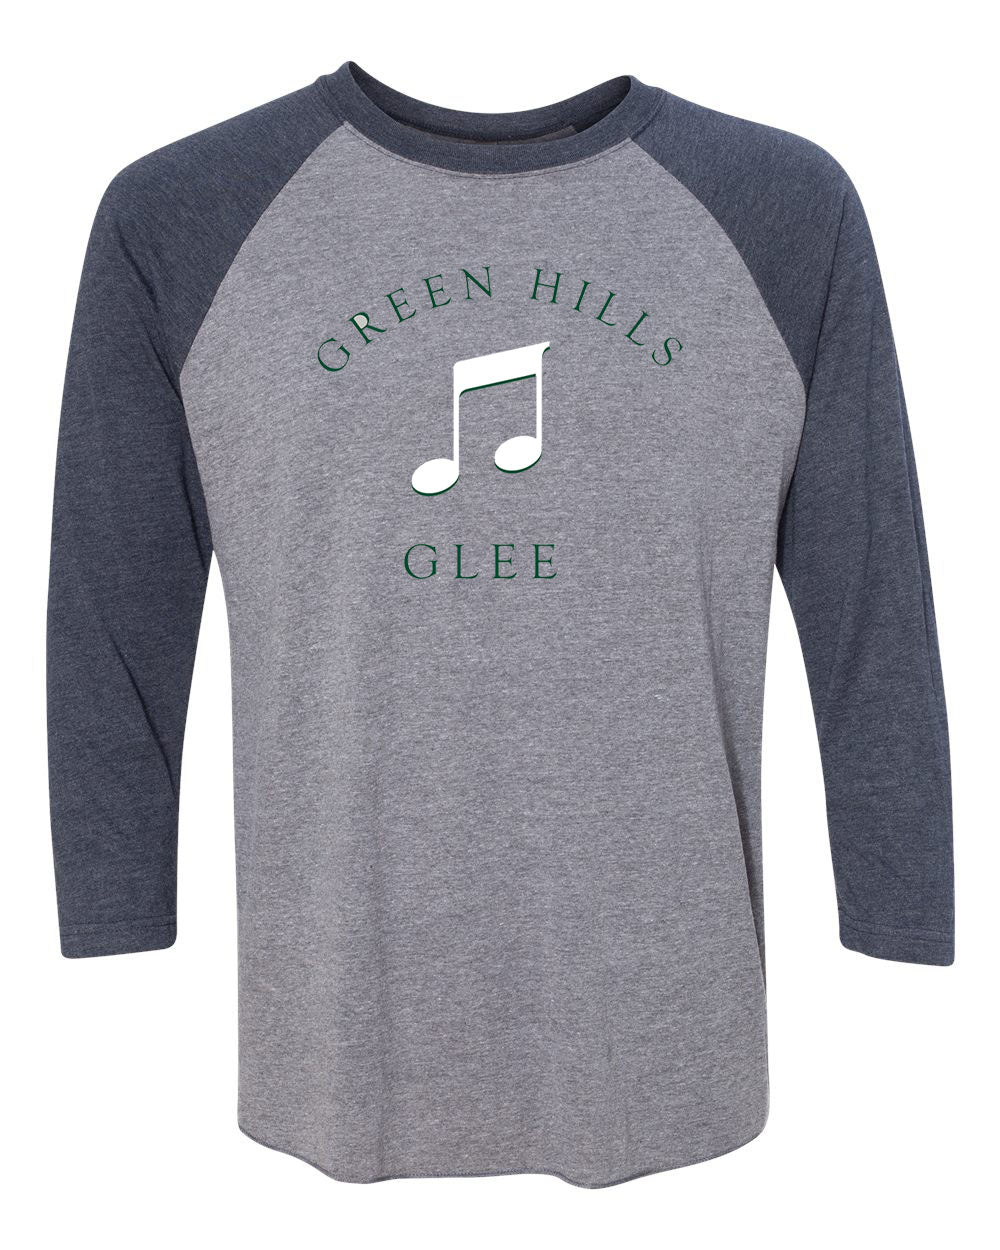 Green Hills design 10 raglan shirt